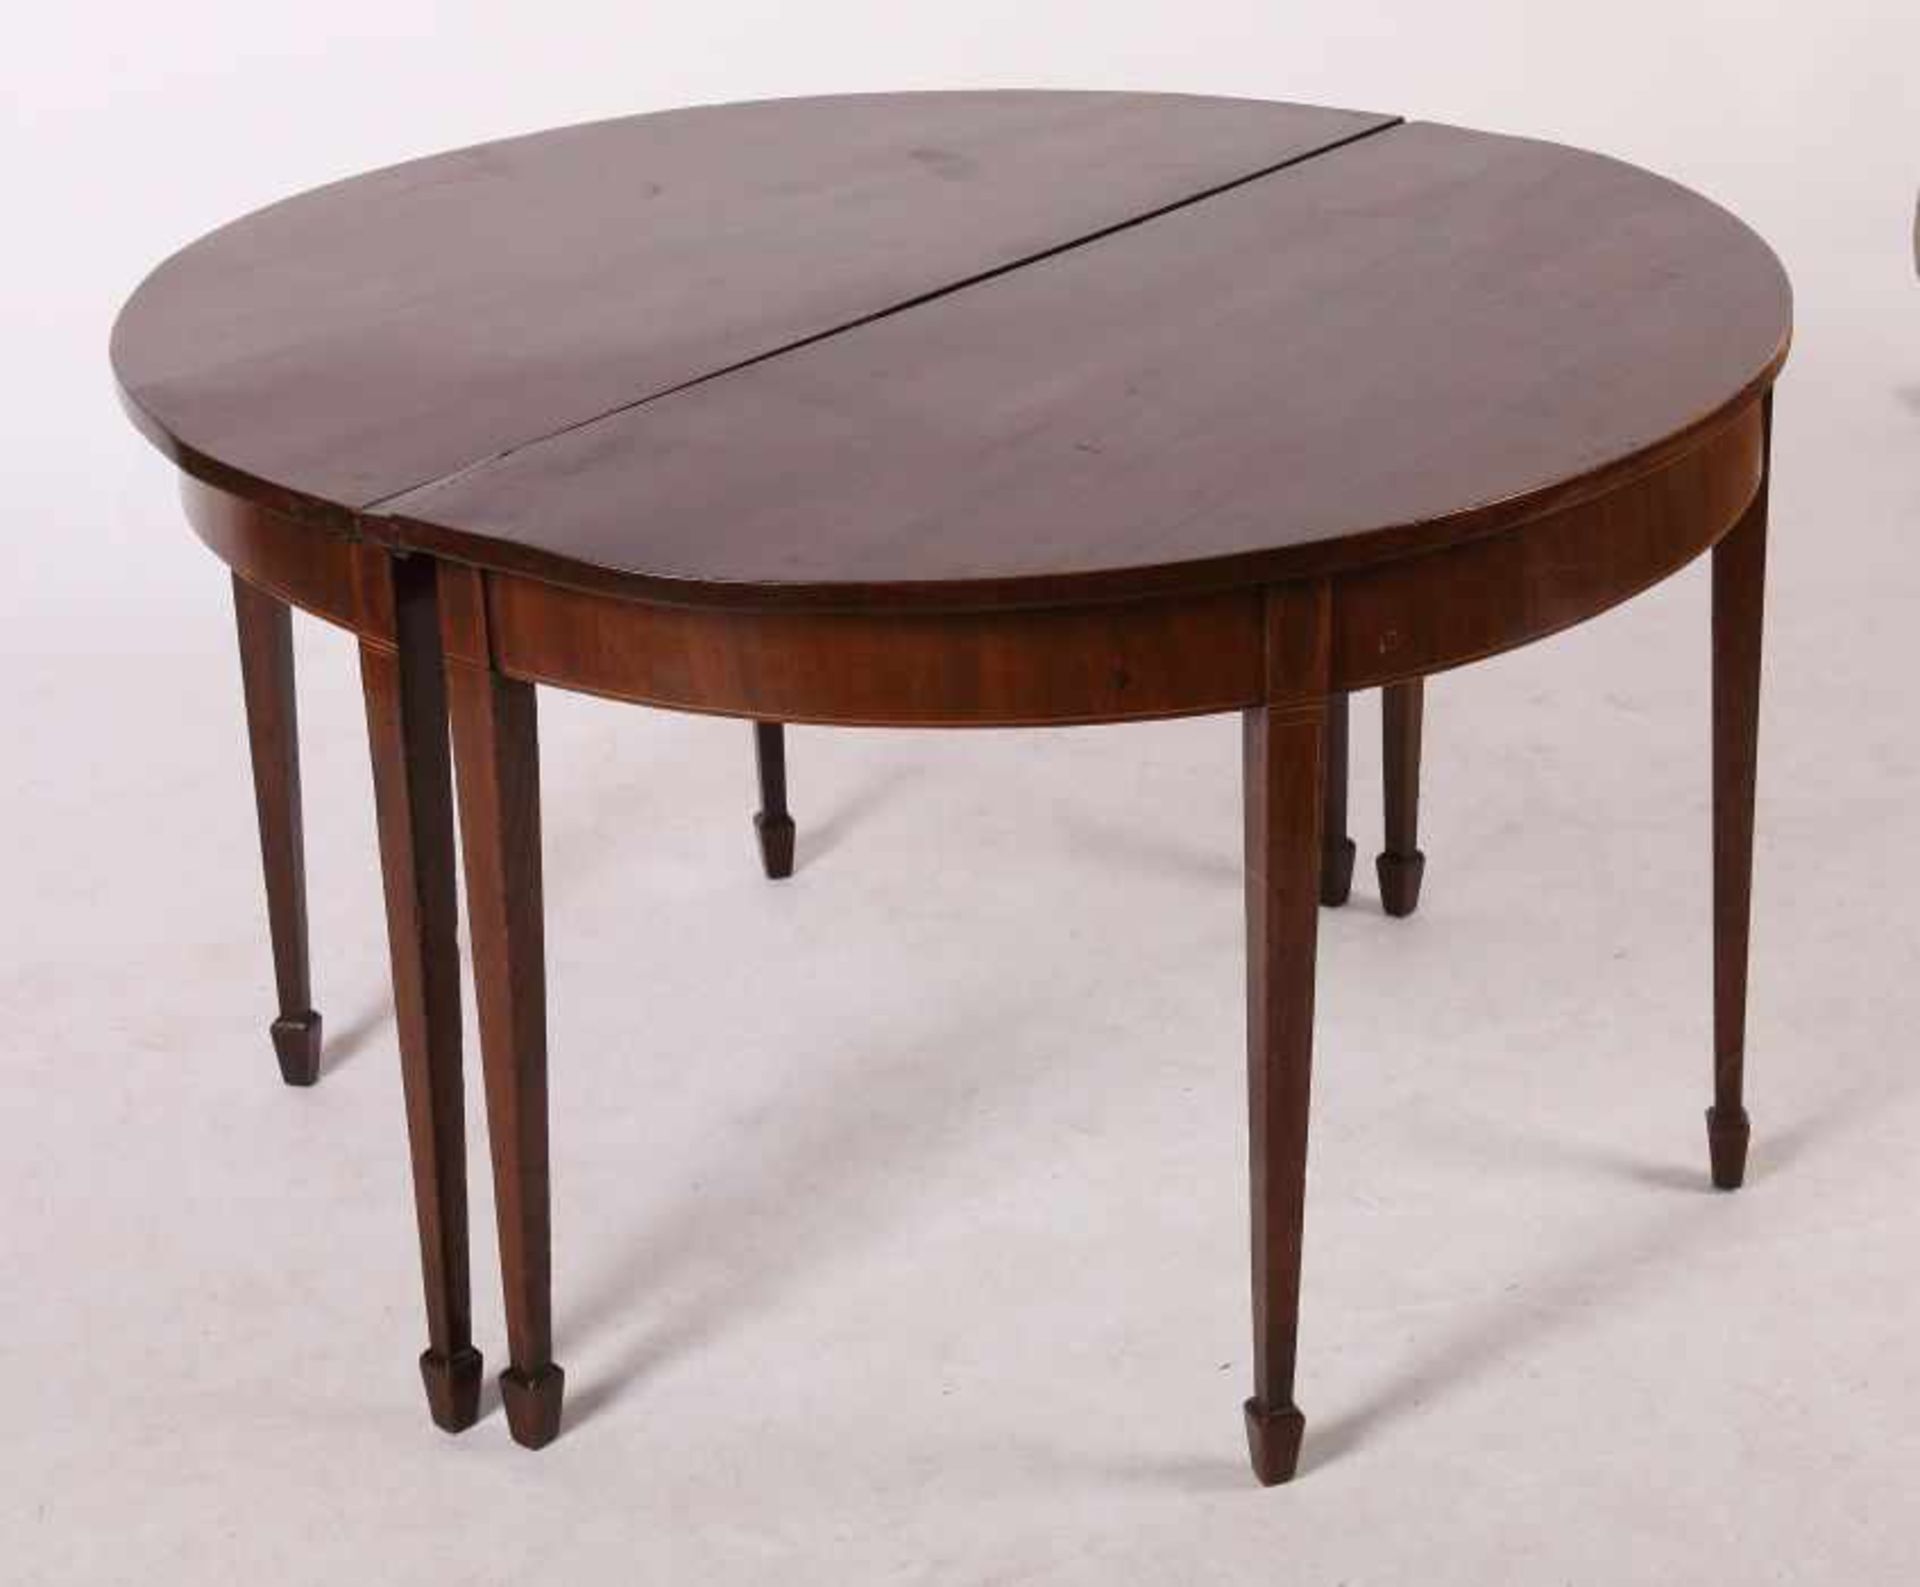 Teilbarer runder Tisch wohl England, 19. Jh., Mahagoni, das Möbel ist zu 2 demi lune-Tischen mit - Bild 2 aus 2